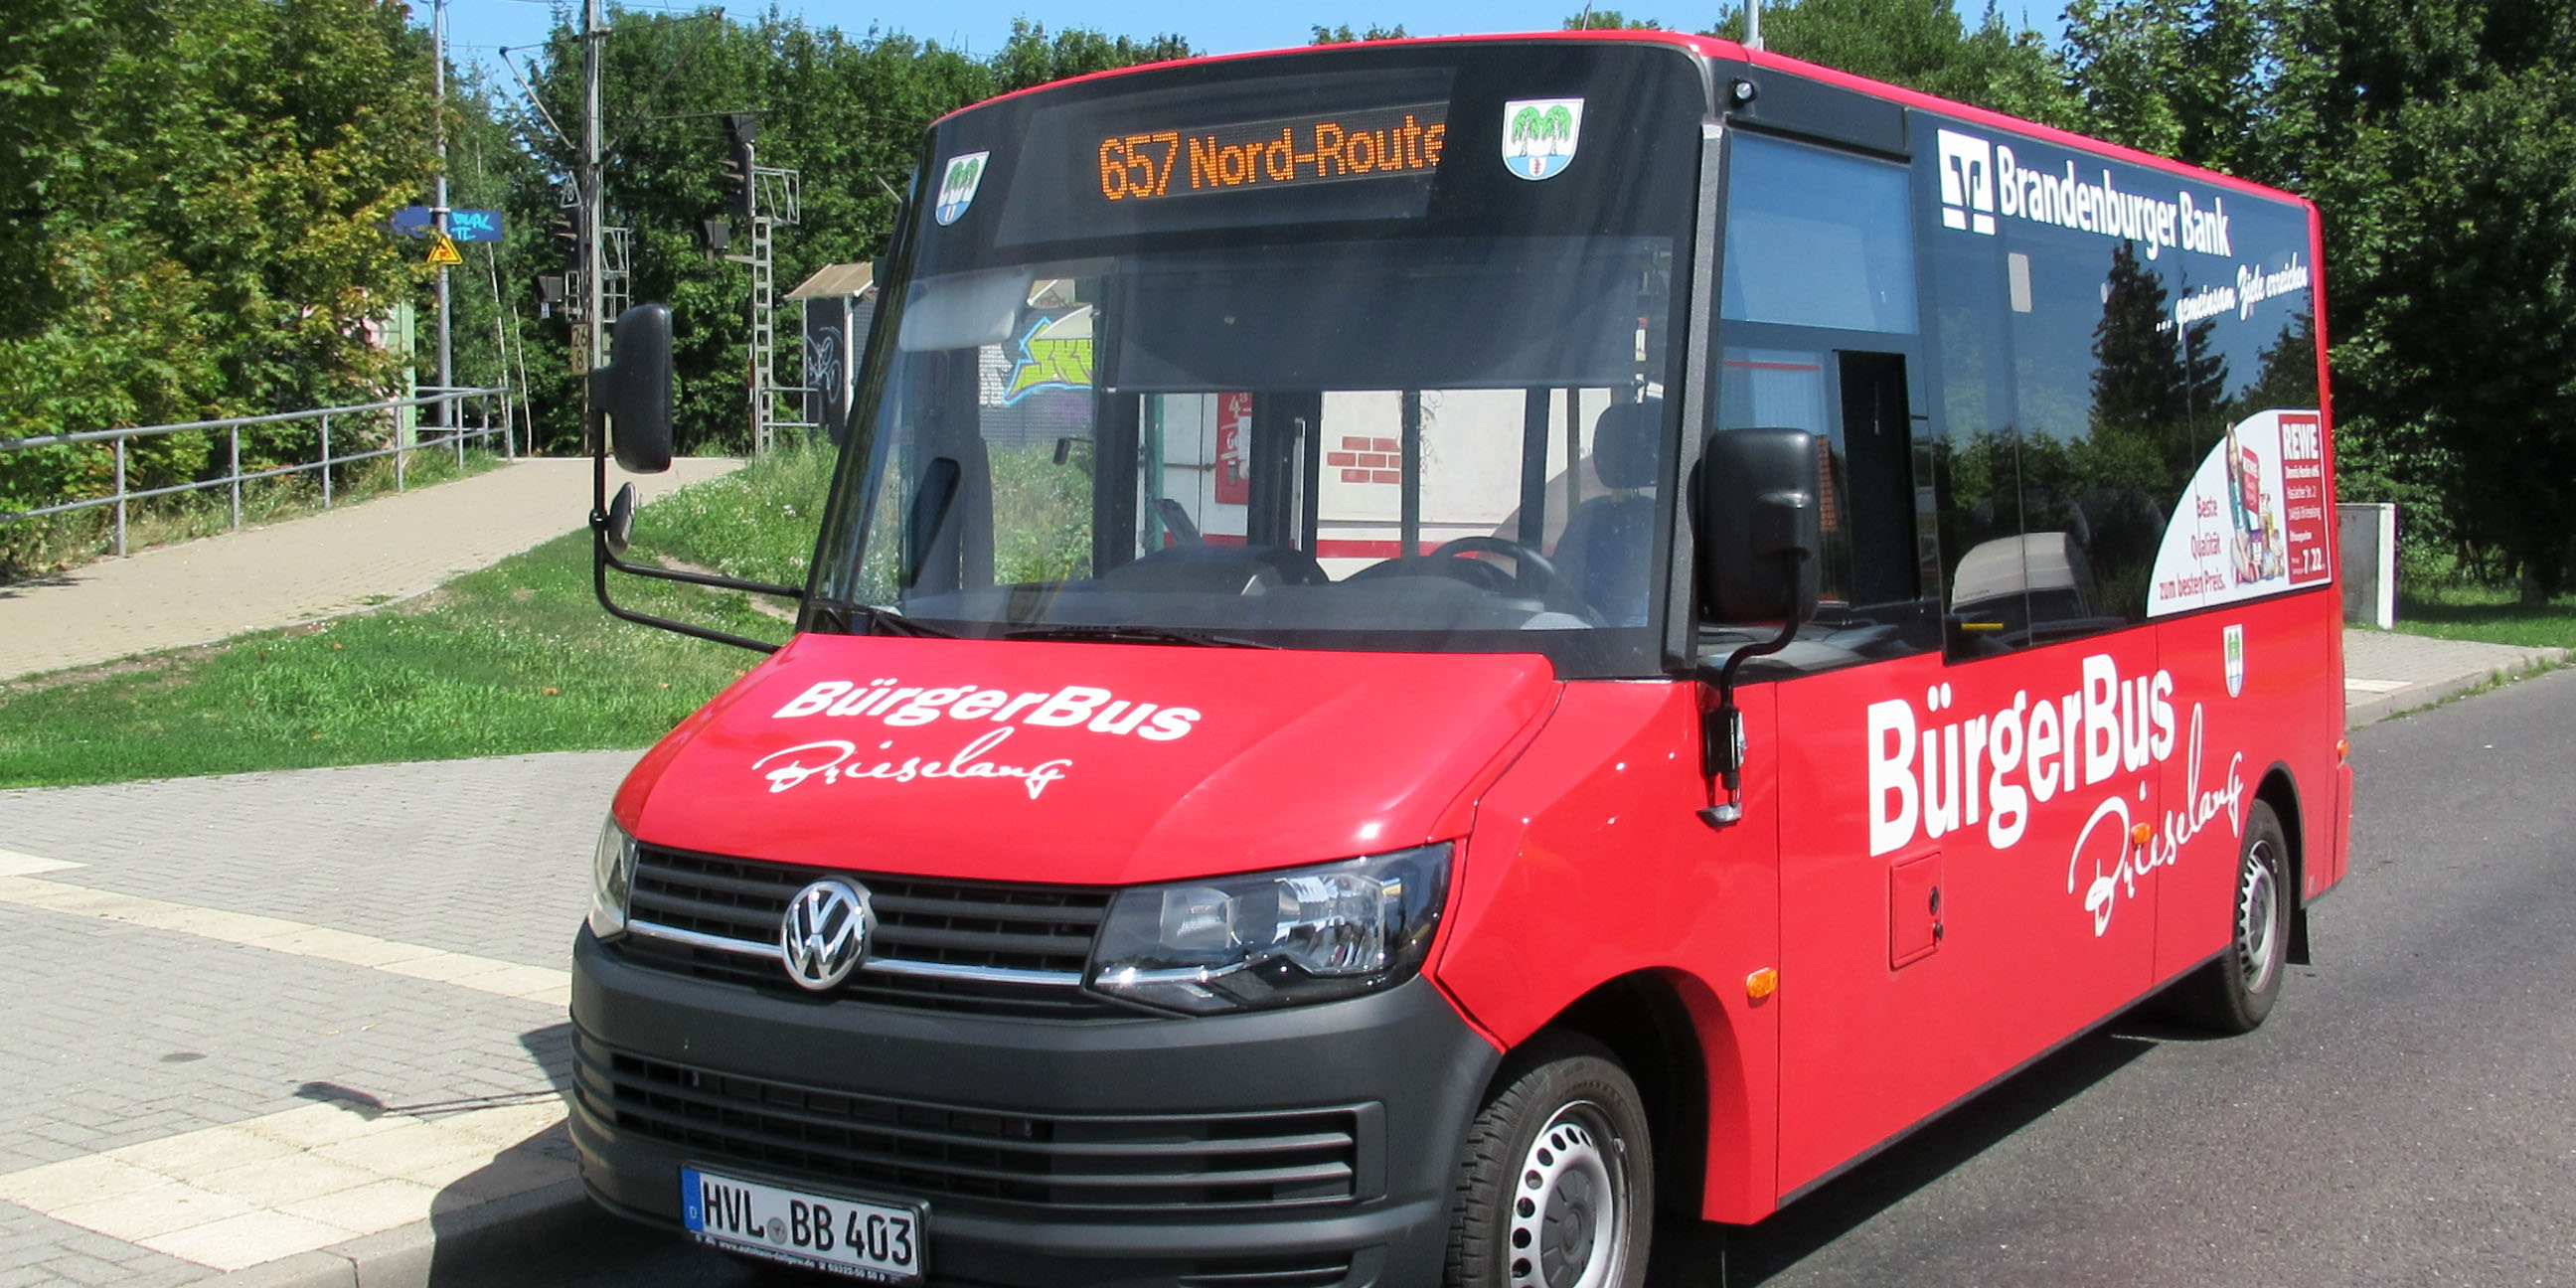 15 Jahre Bürgerbus in Brieselang